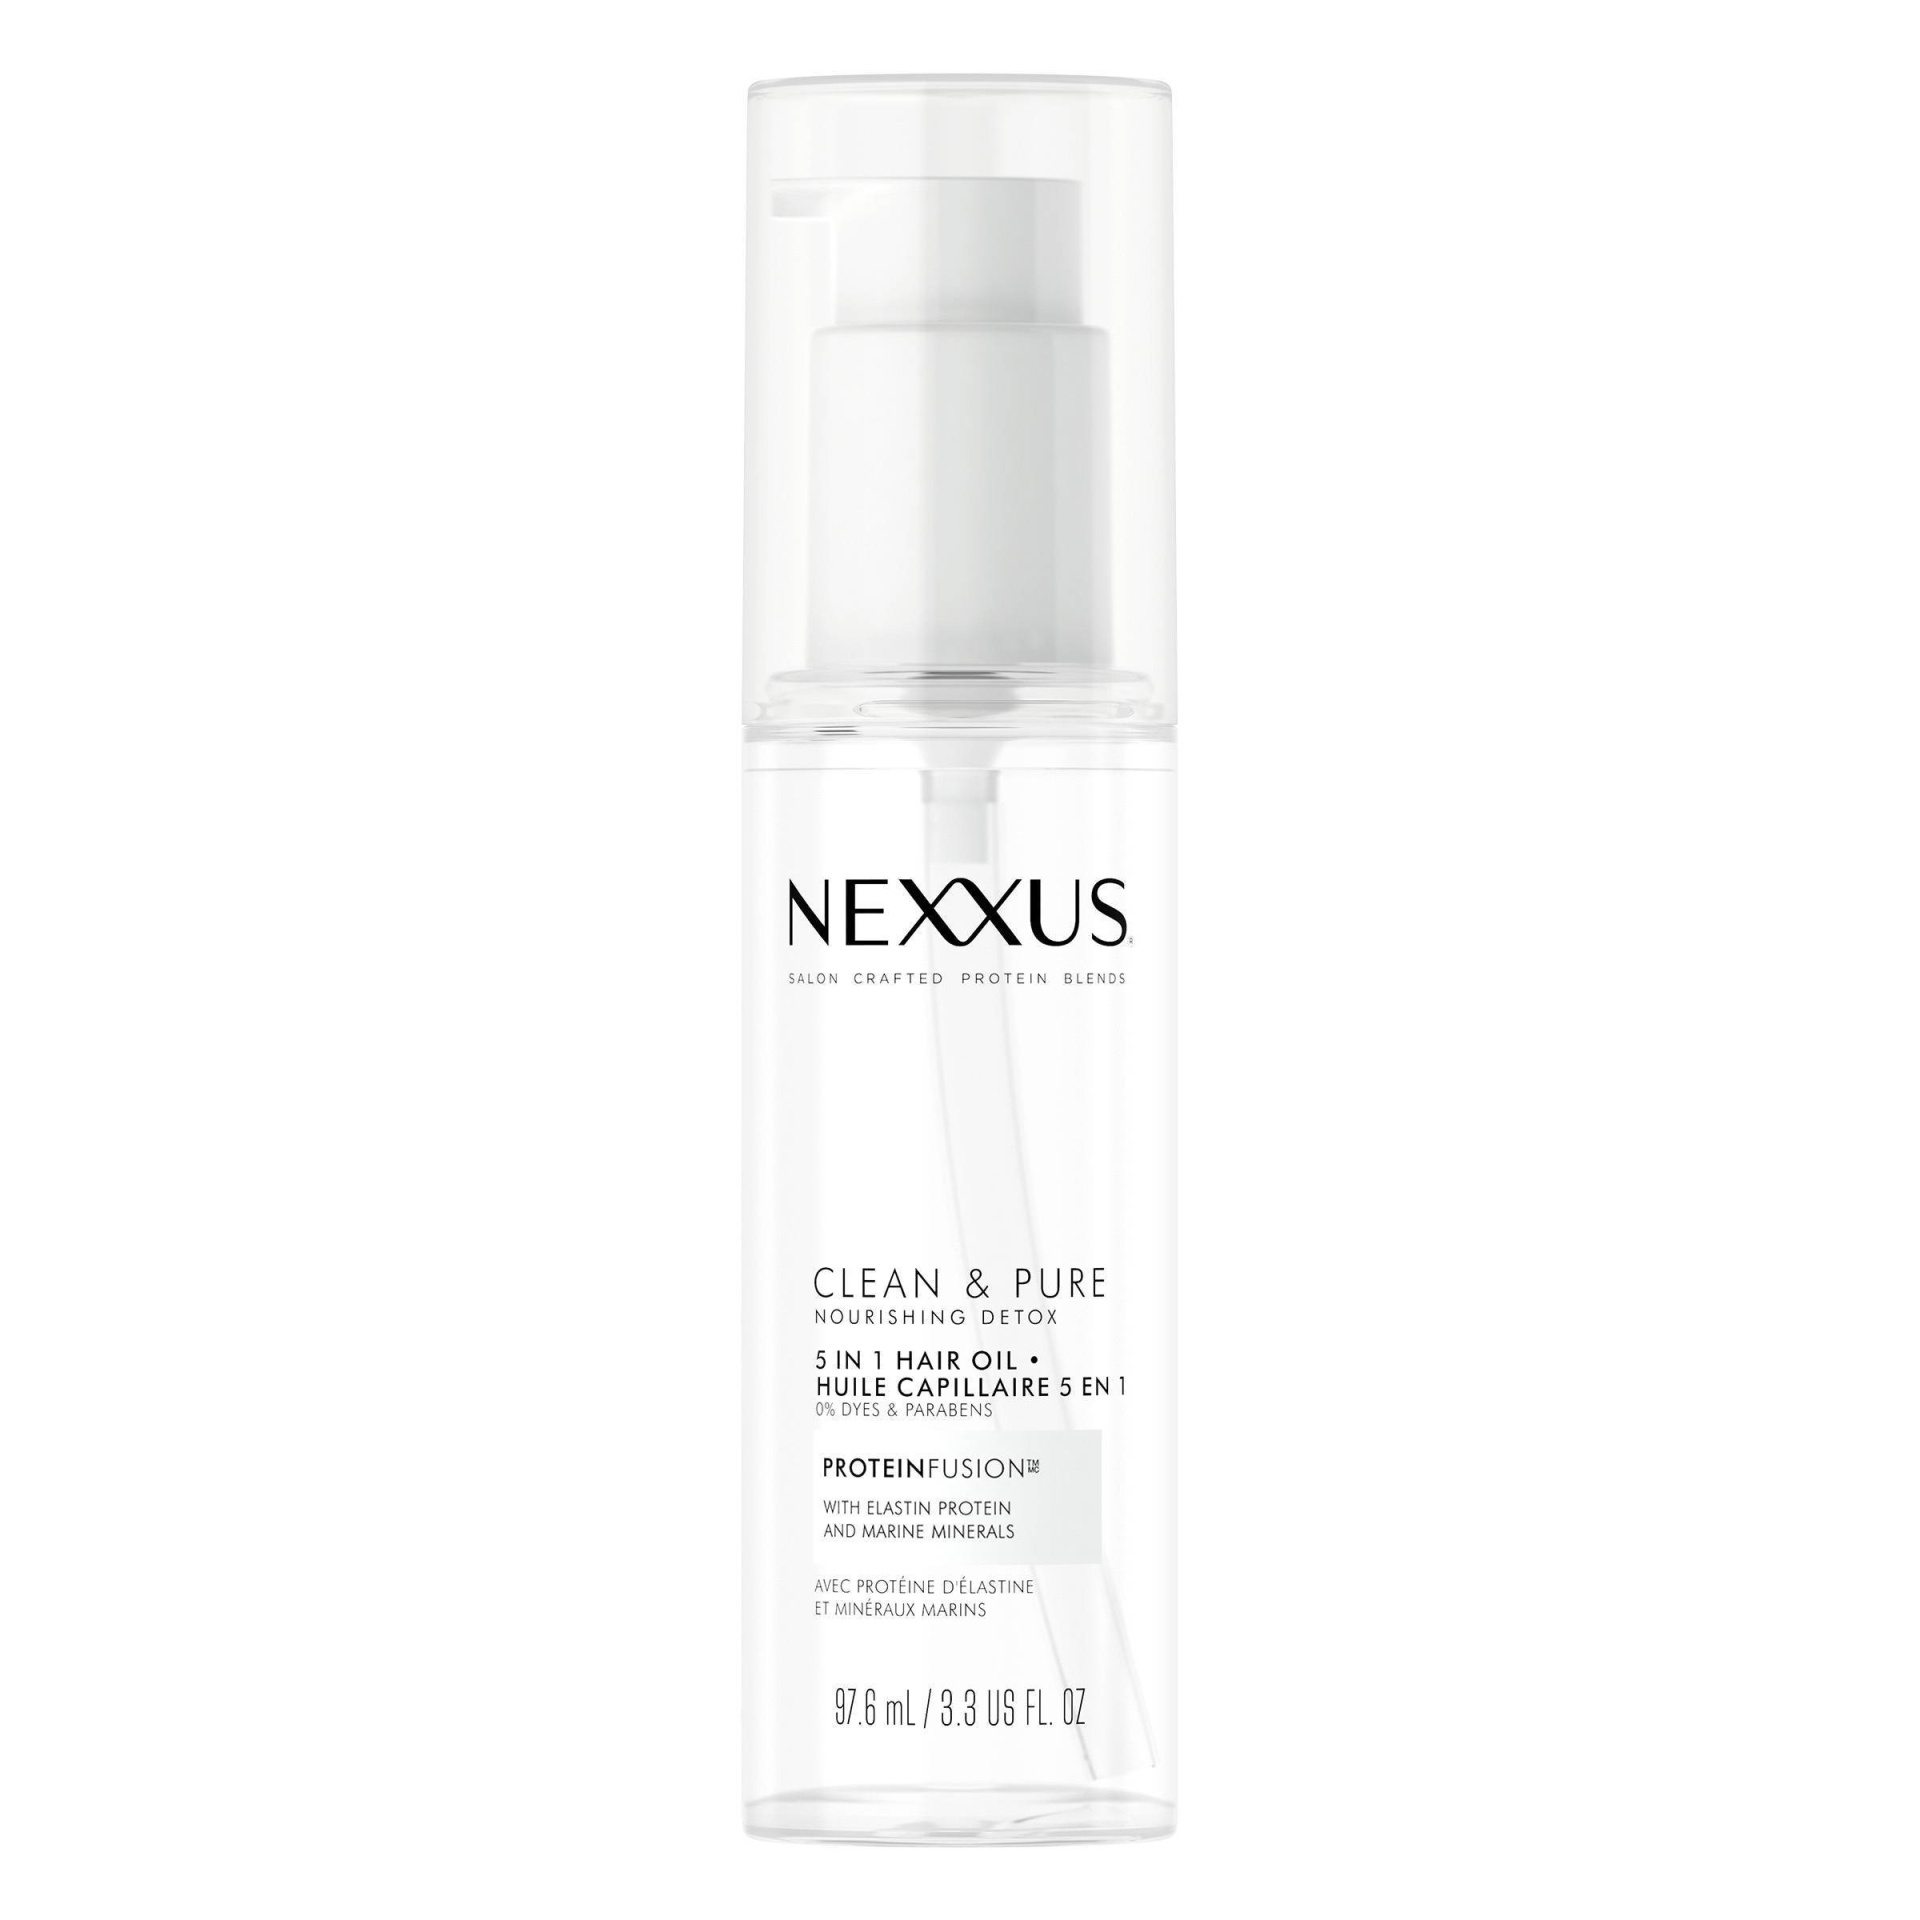 Nexxus Clean & Pure Dbl Cleanse Oil  oz | Shipt